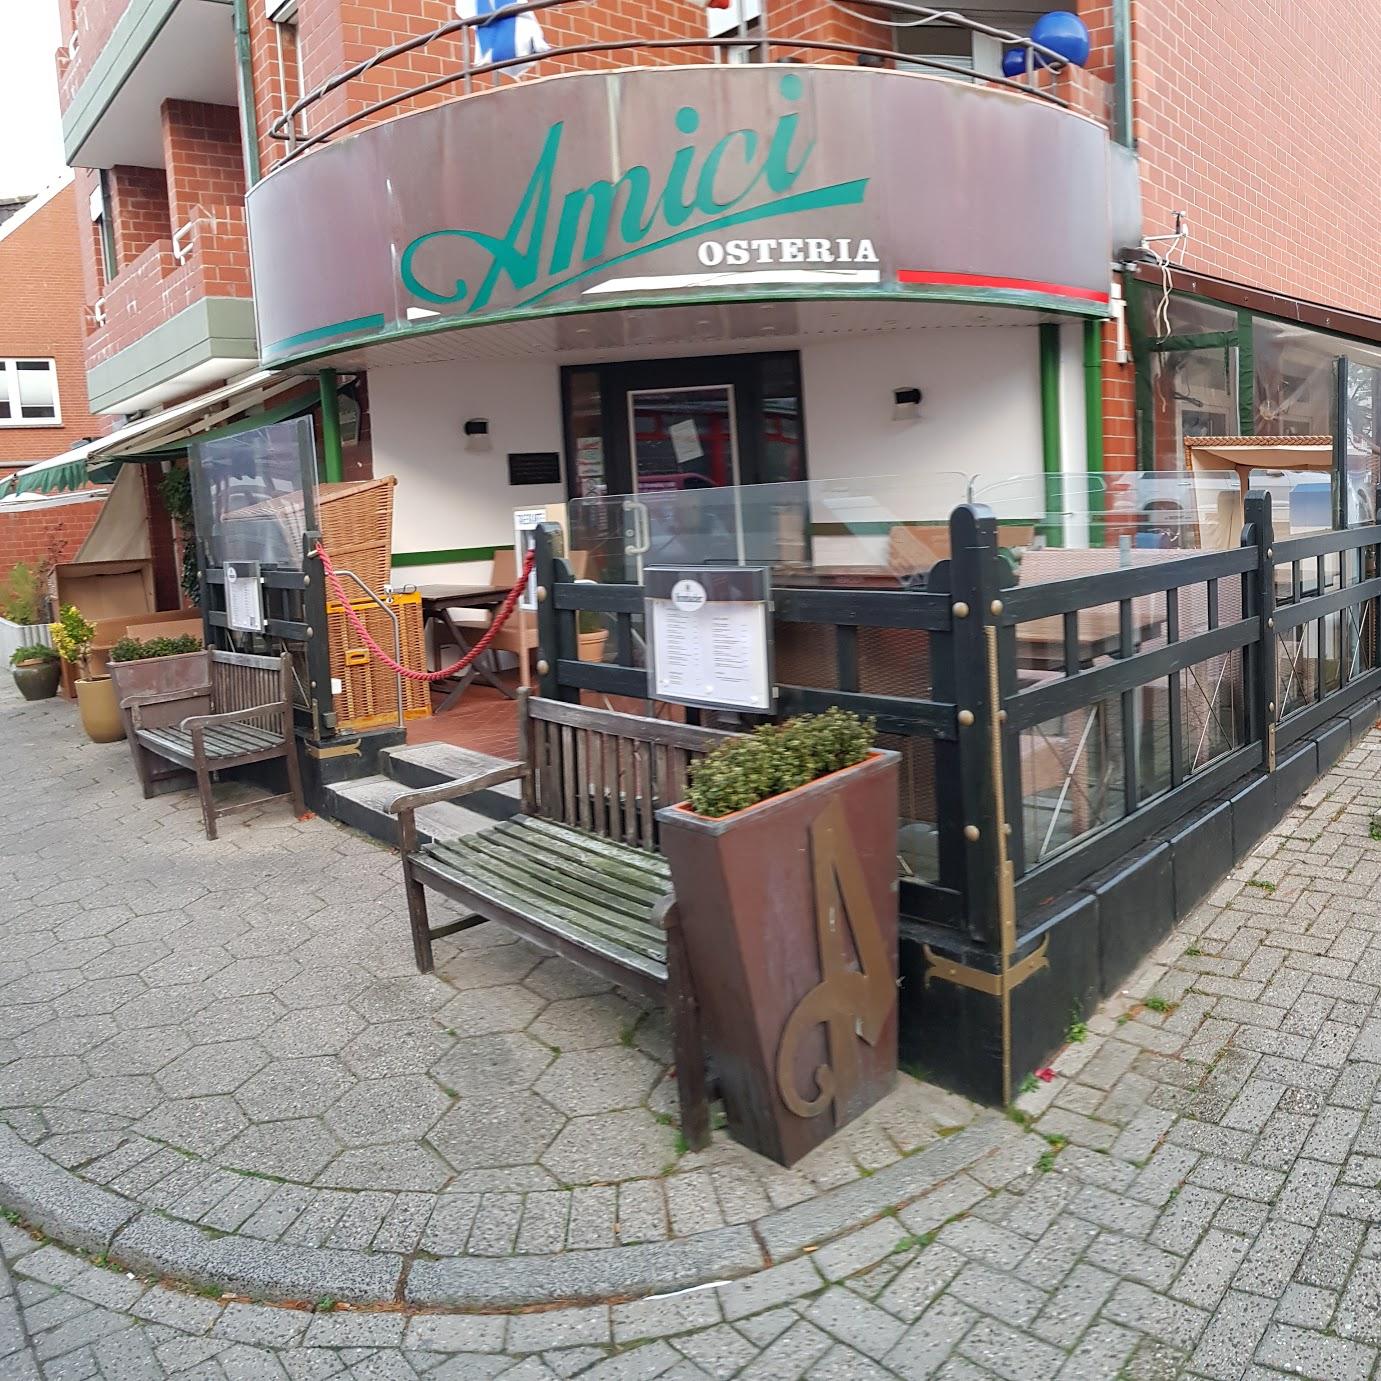 Restaurant "Restaurant Amici" in Norderney